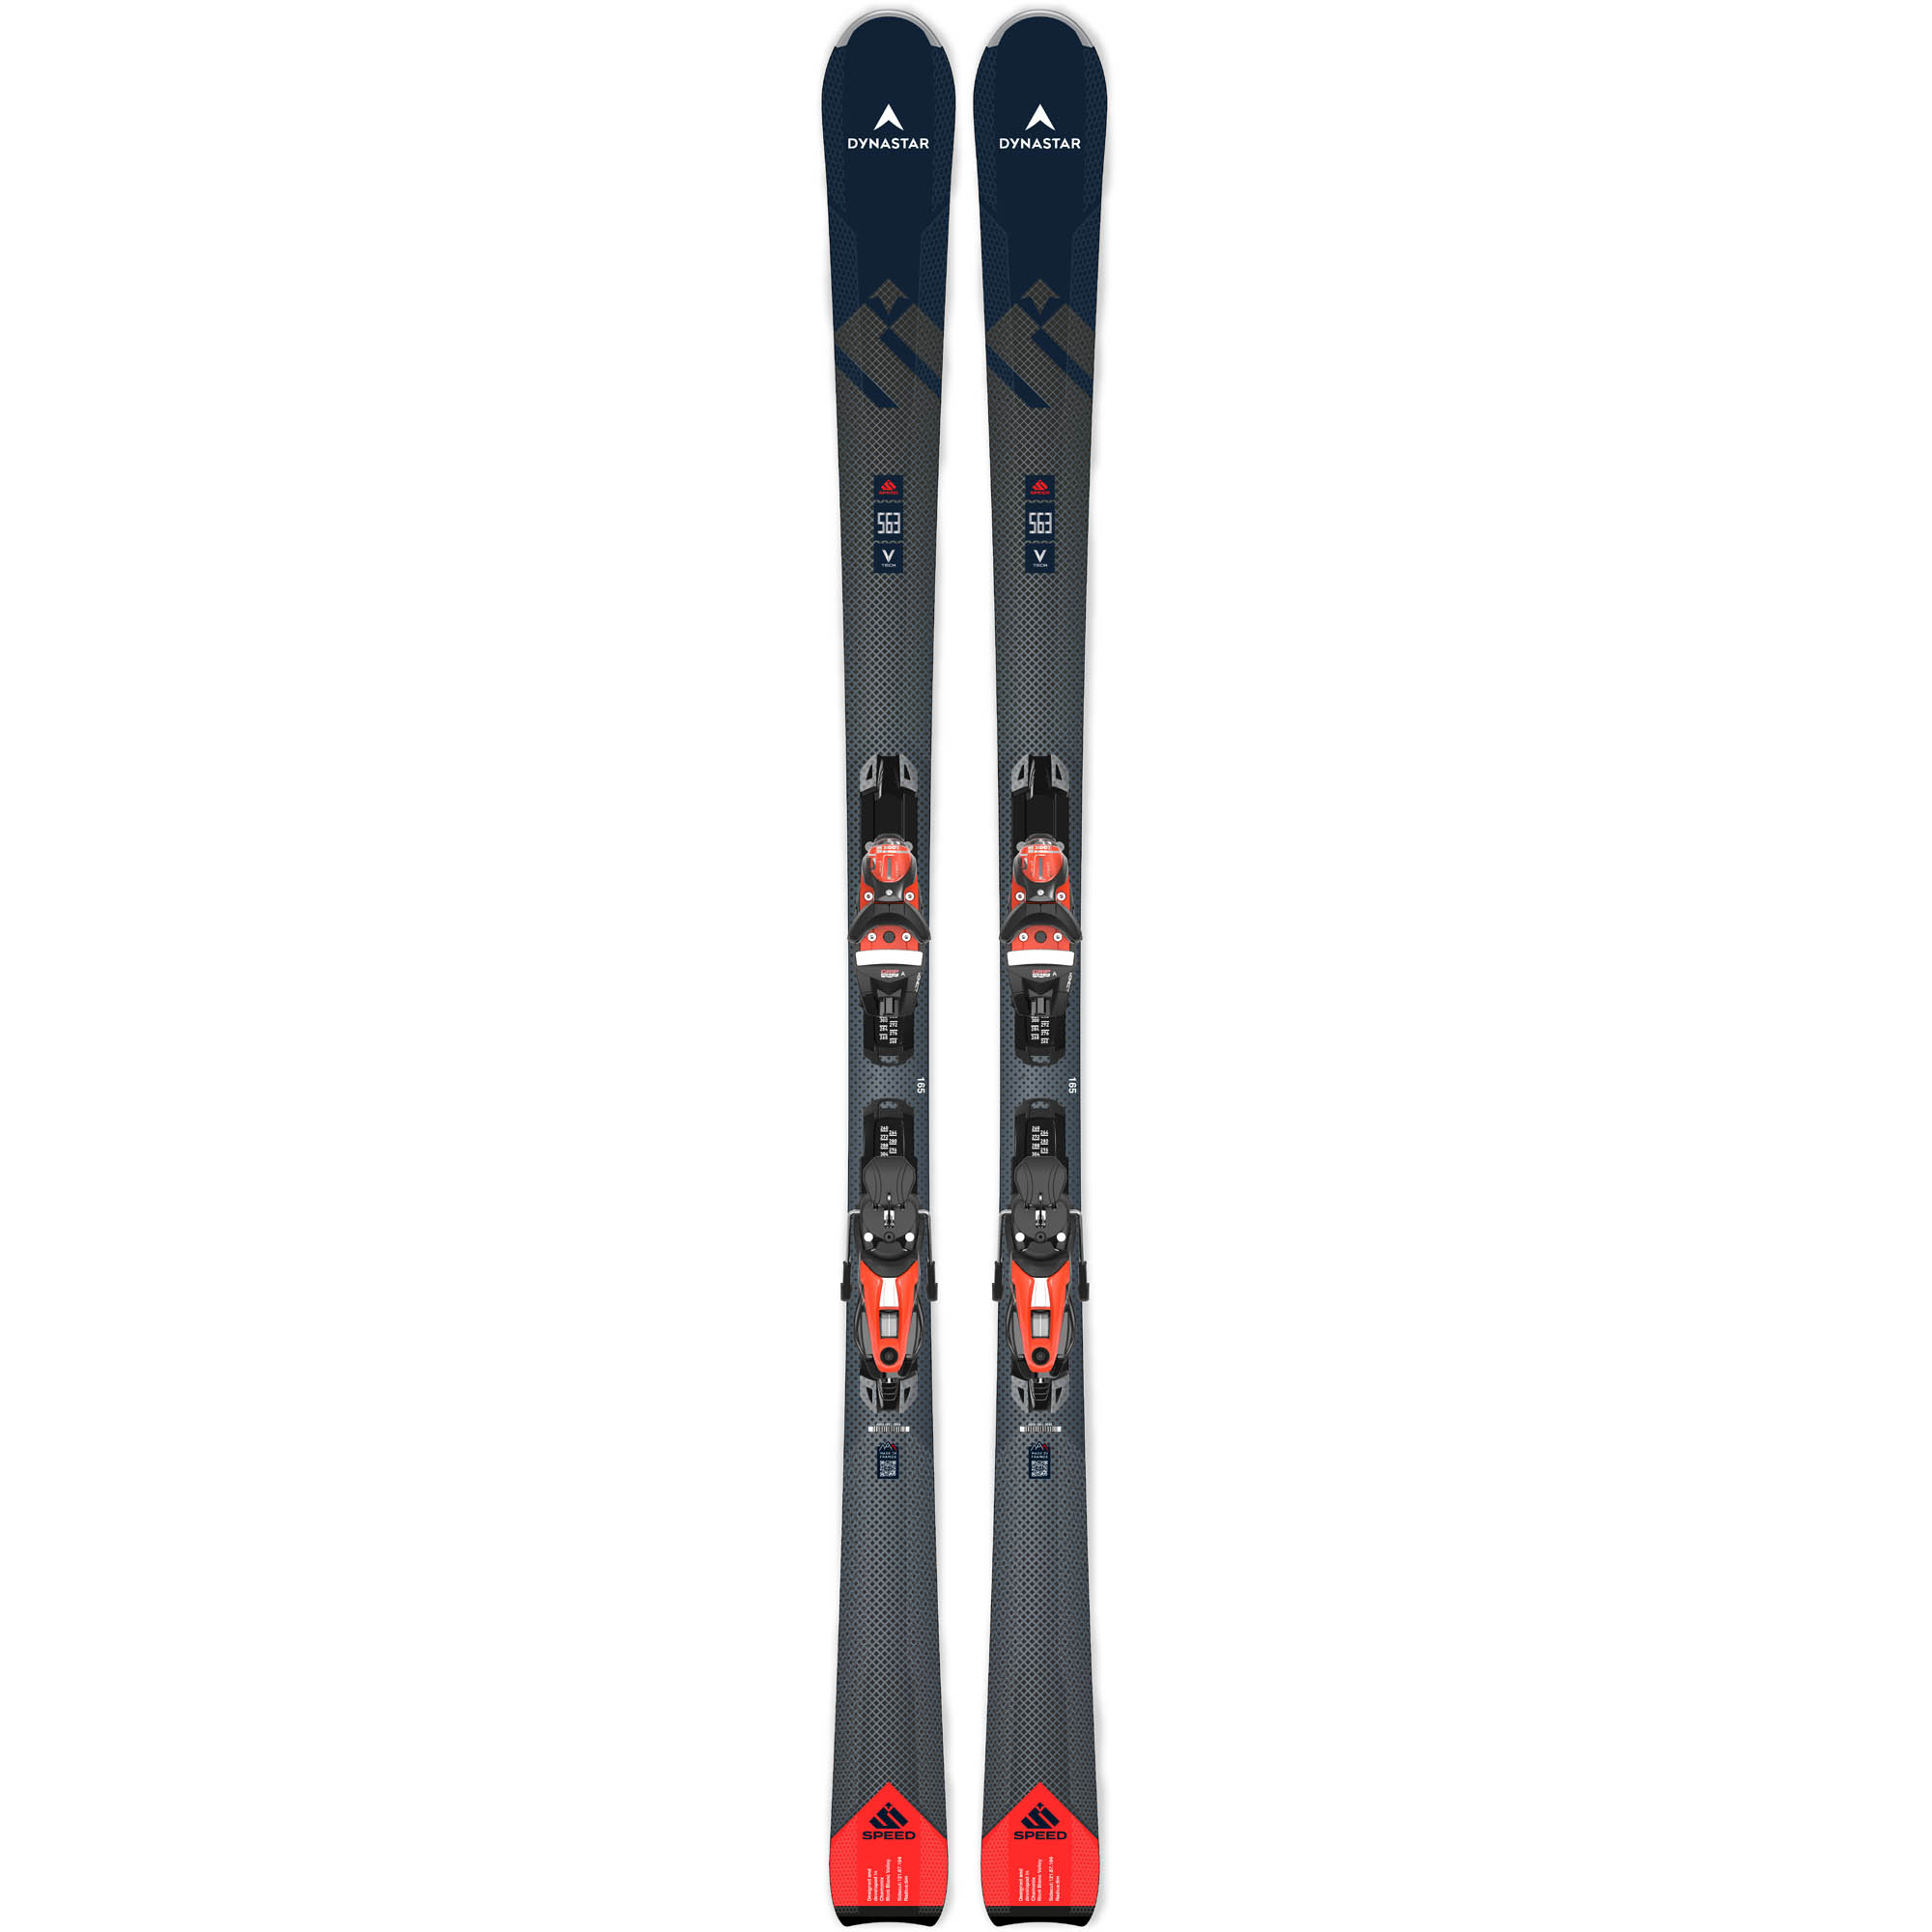 Dynastar Speed 563 Konect NX 12 K GW B80 Skis